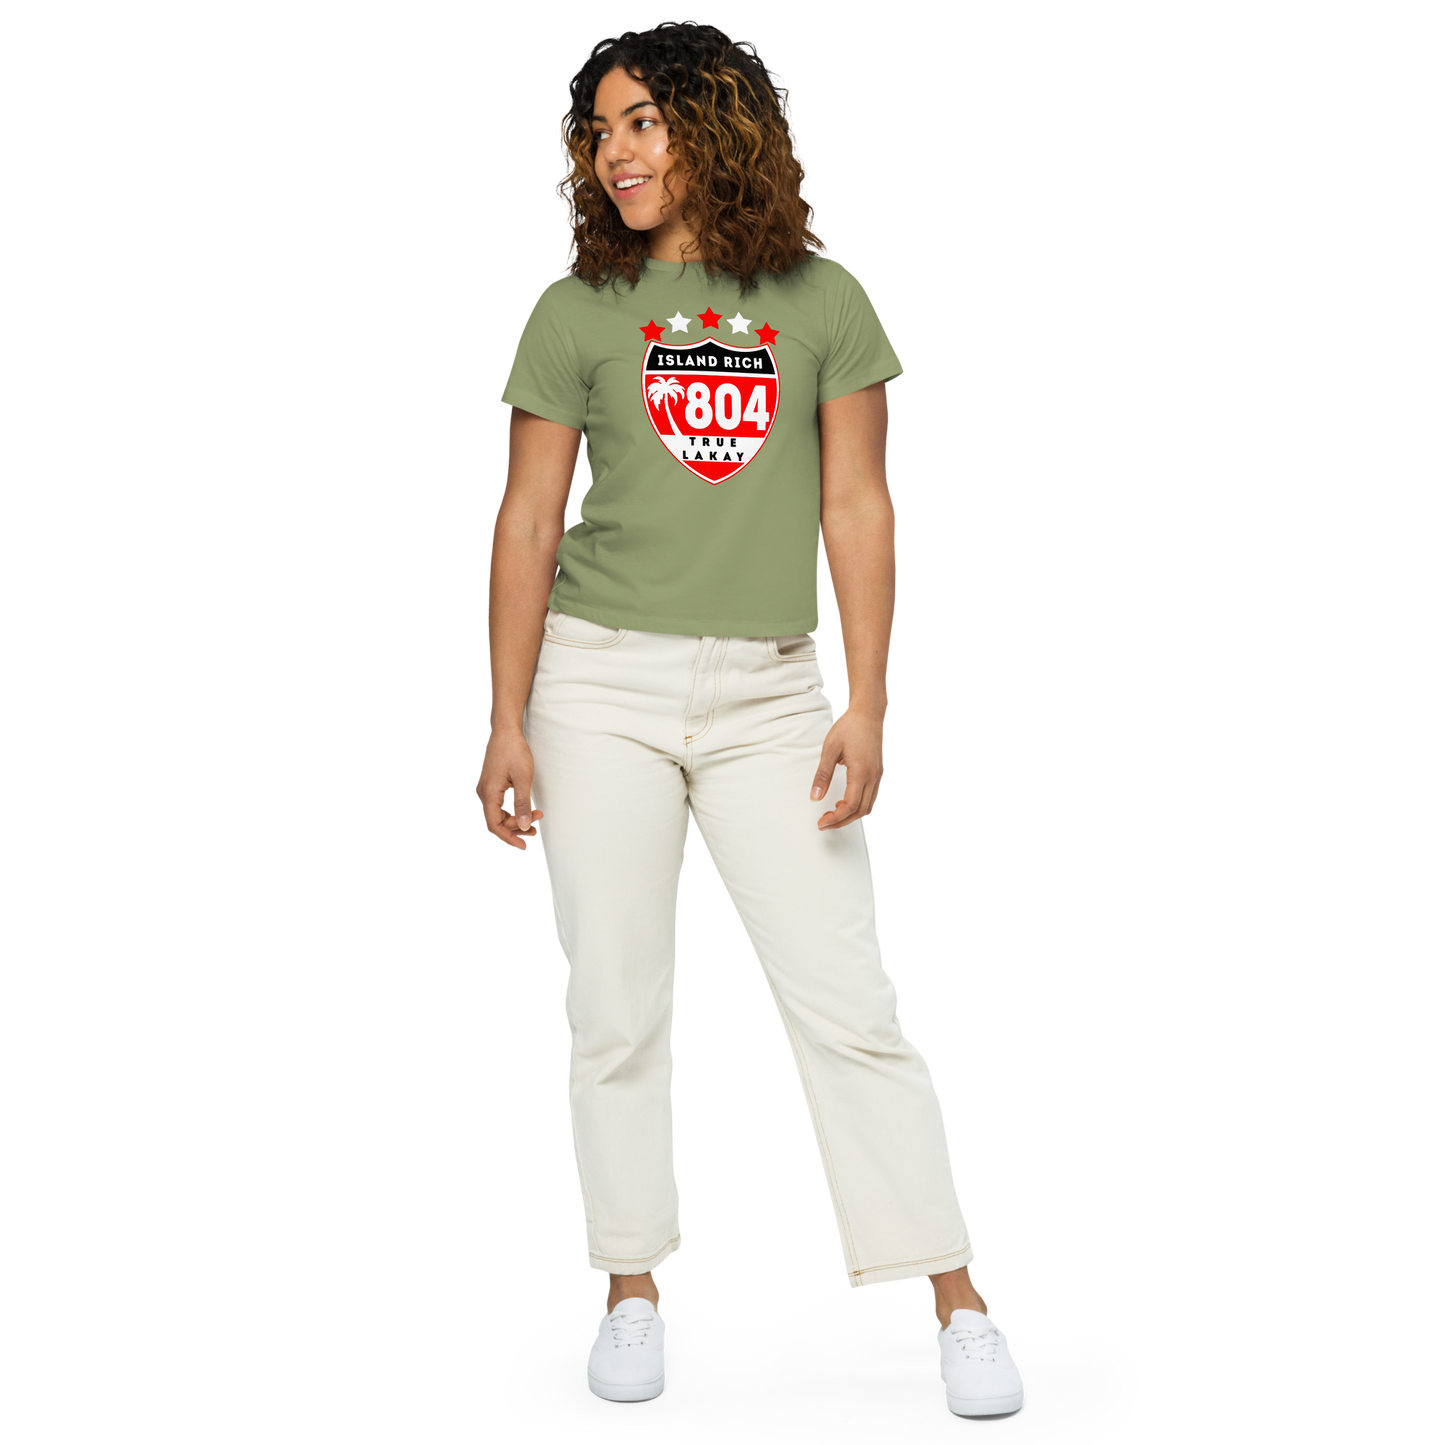 Island Rich Women’s high-waisted t-shirt